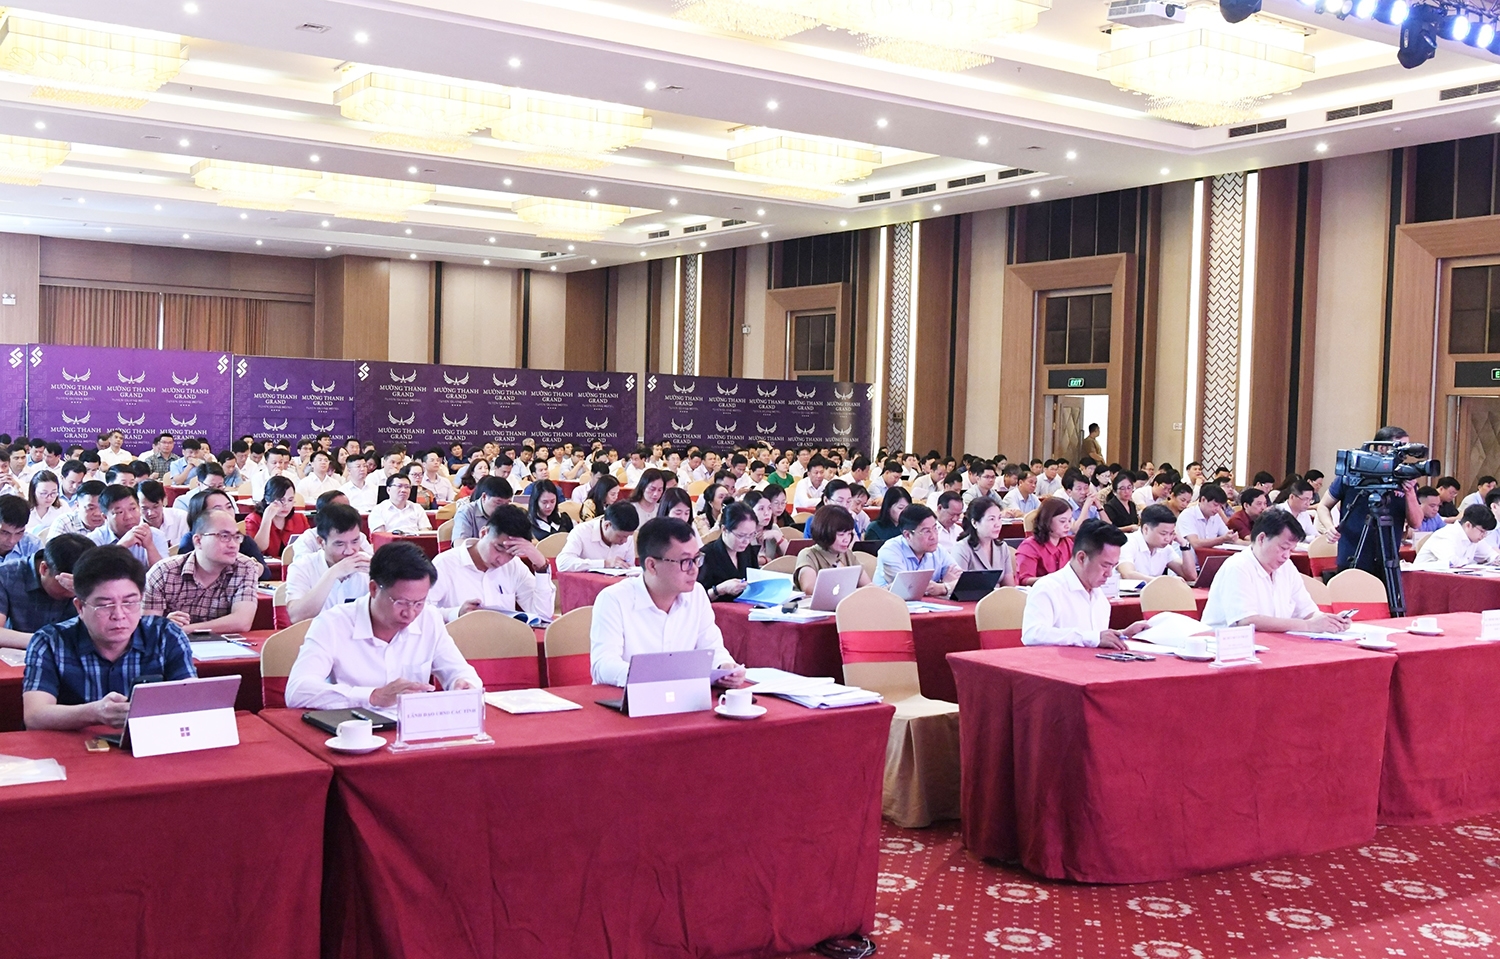 Dự Hội nghị có đại diện lãnh đạo tỉnh Tuyên Quang; đại diện lãnh đạo các bộ, ban ngành Trung ương; lãnh đạo các tỉnh miền núi phía Bắc; cùng 300 đại biểu là cán bộ, doanh nghiệp, hợp tác xã của 19 tỉnh miền núi phía Bắc